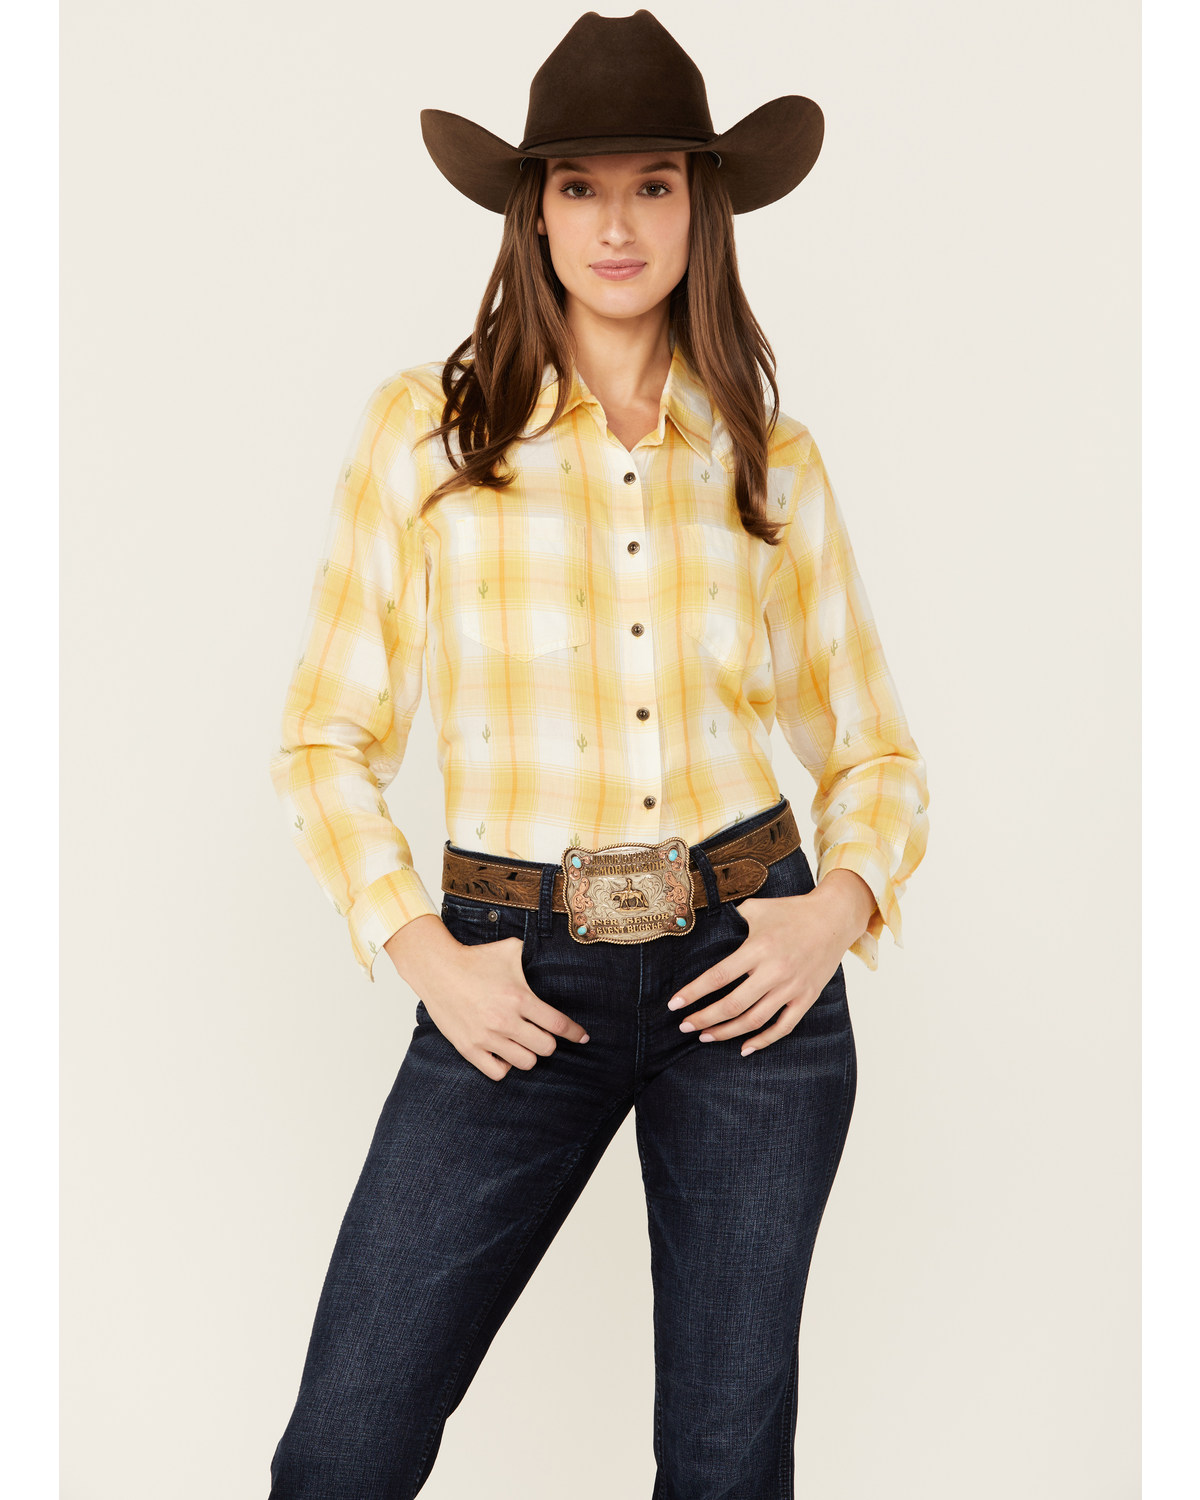 Ariat Women's R.E.A.L Billie Jean Cactus Plaid Print Long Sleeve Button-Down Western Shirt